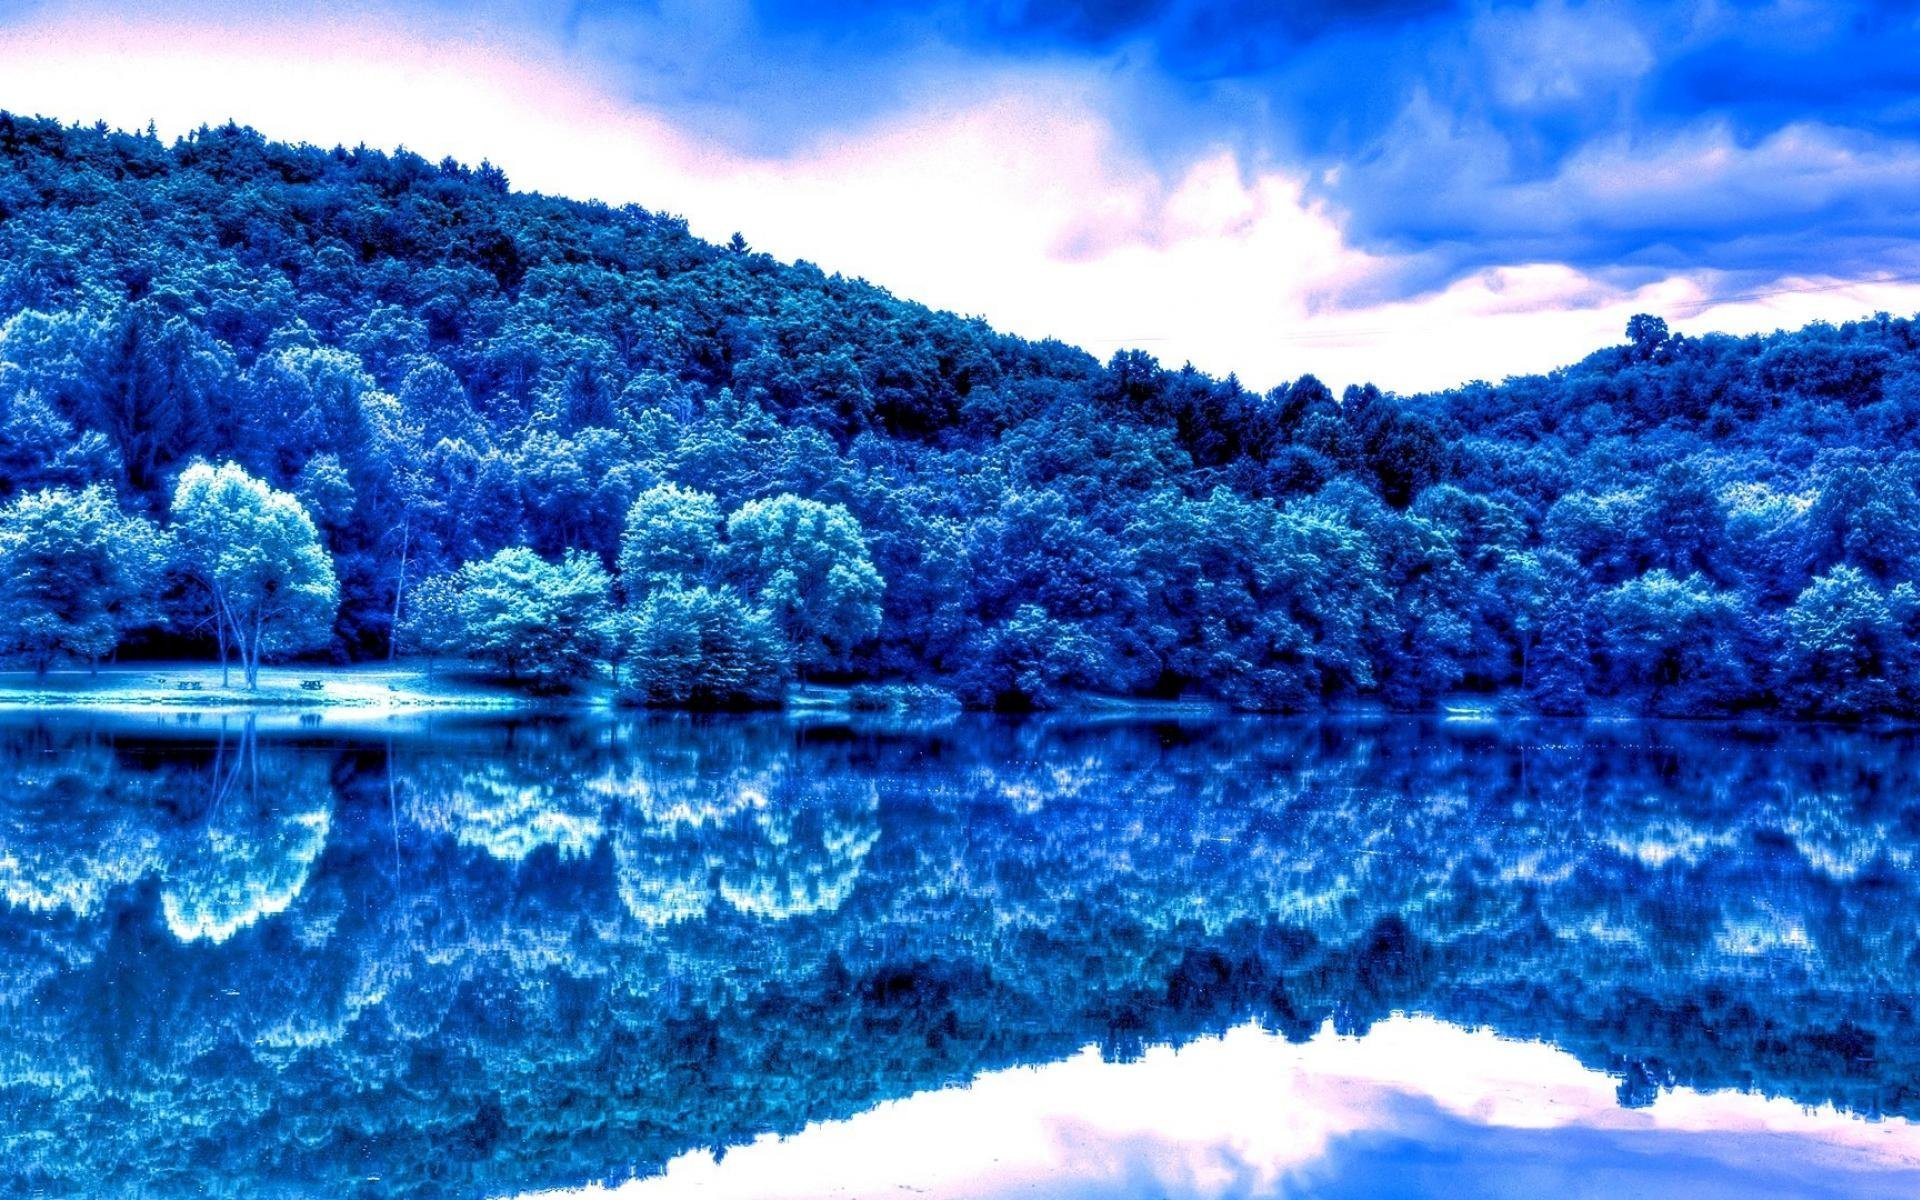 Голубая синь. Голубой пейзаж. Синяя природа. Синий цвет в природе. Пейзаж в синих тонах.